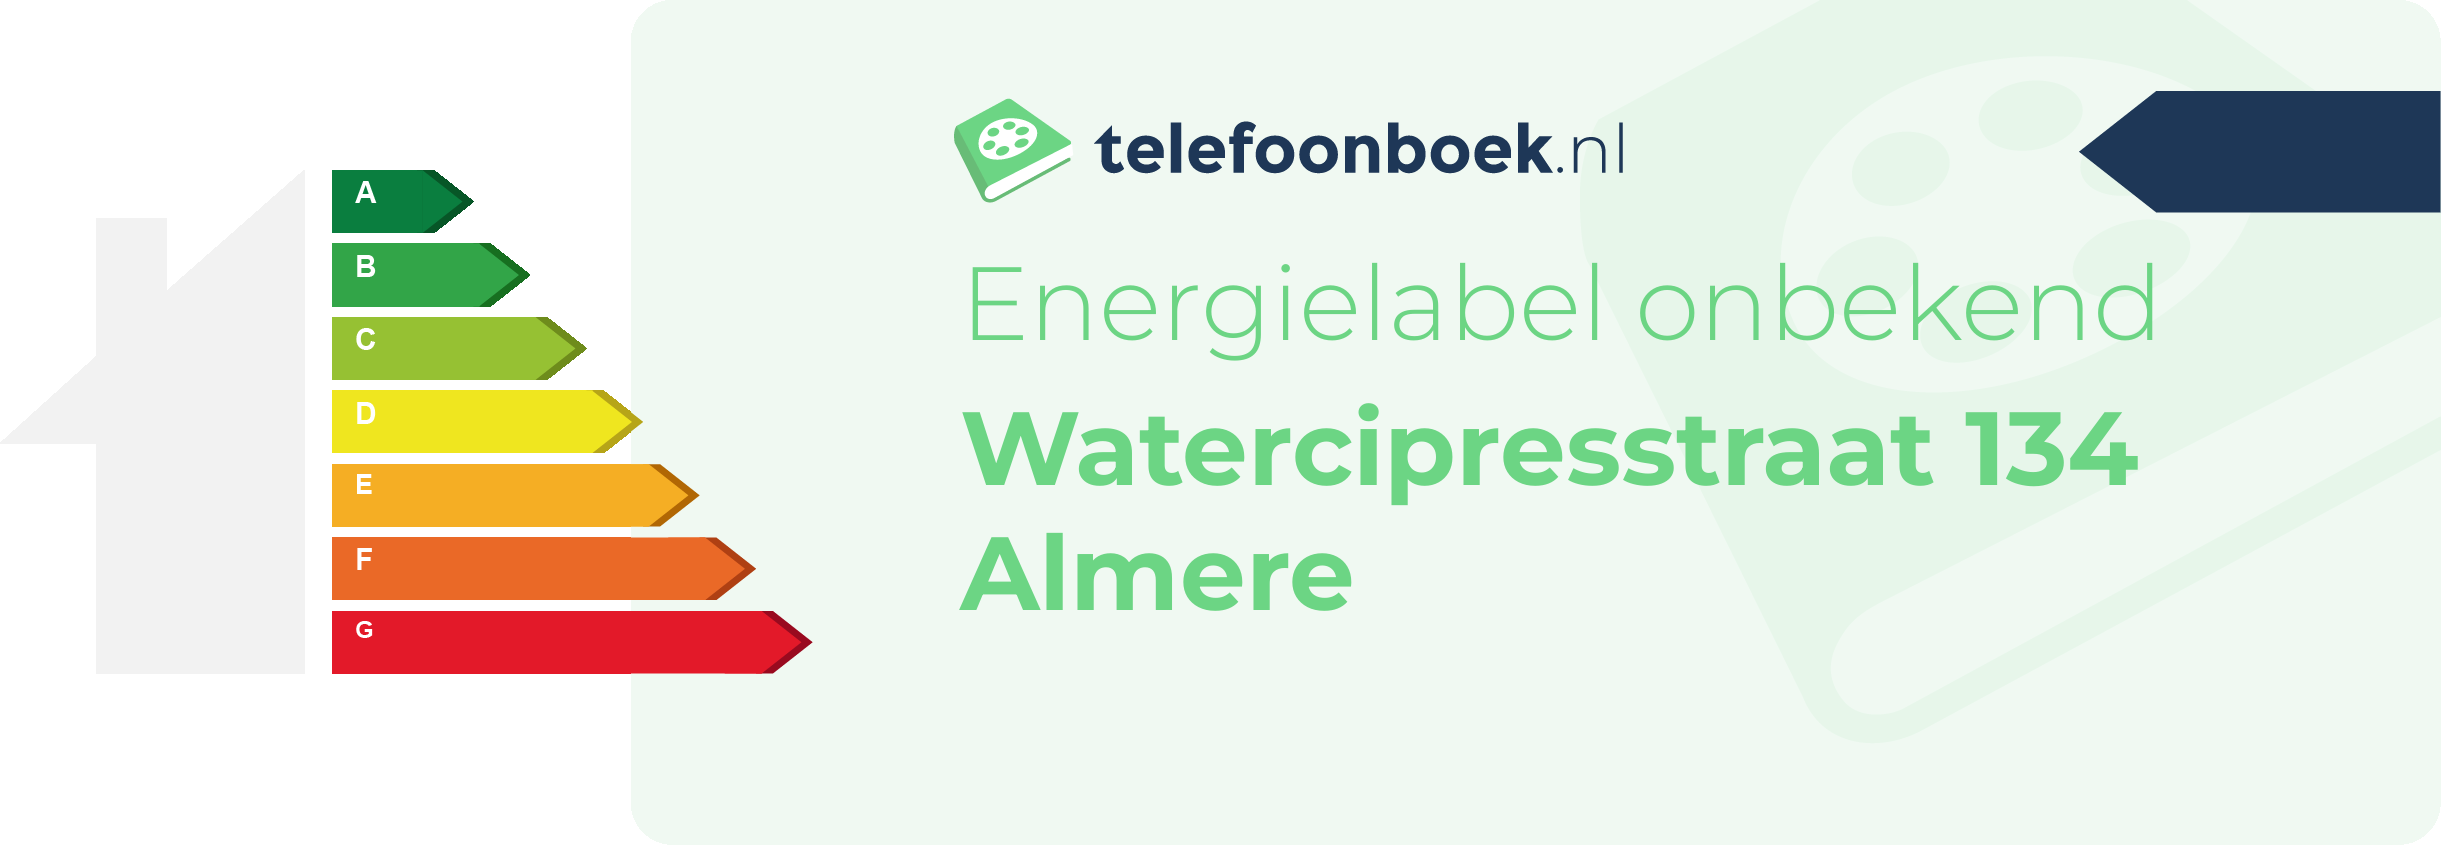 Energielabel Watercipresstraat 134 Almere